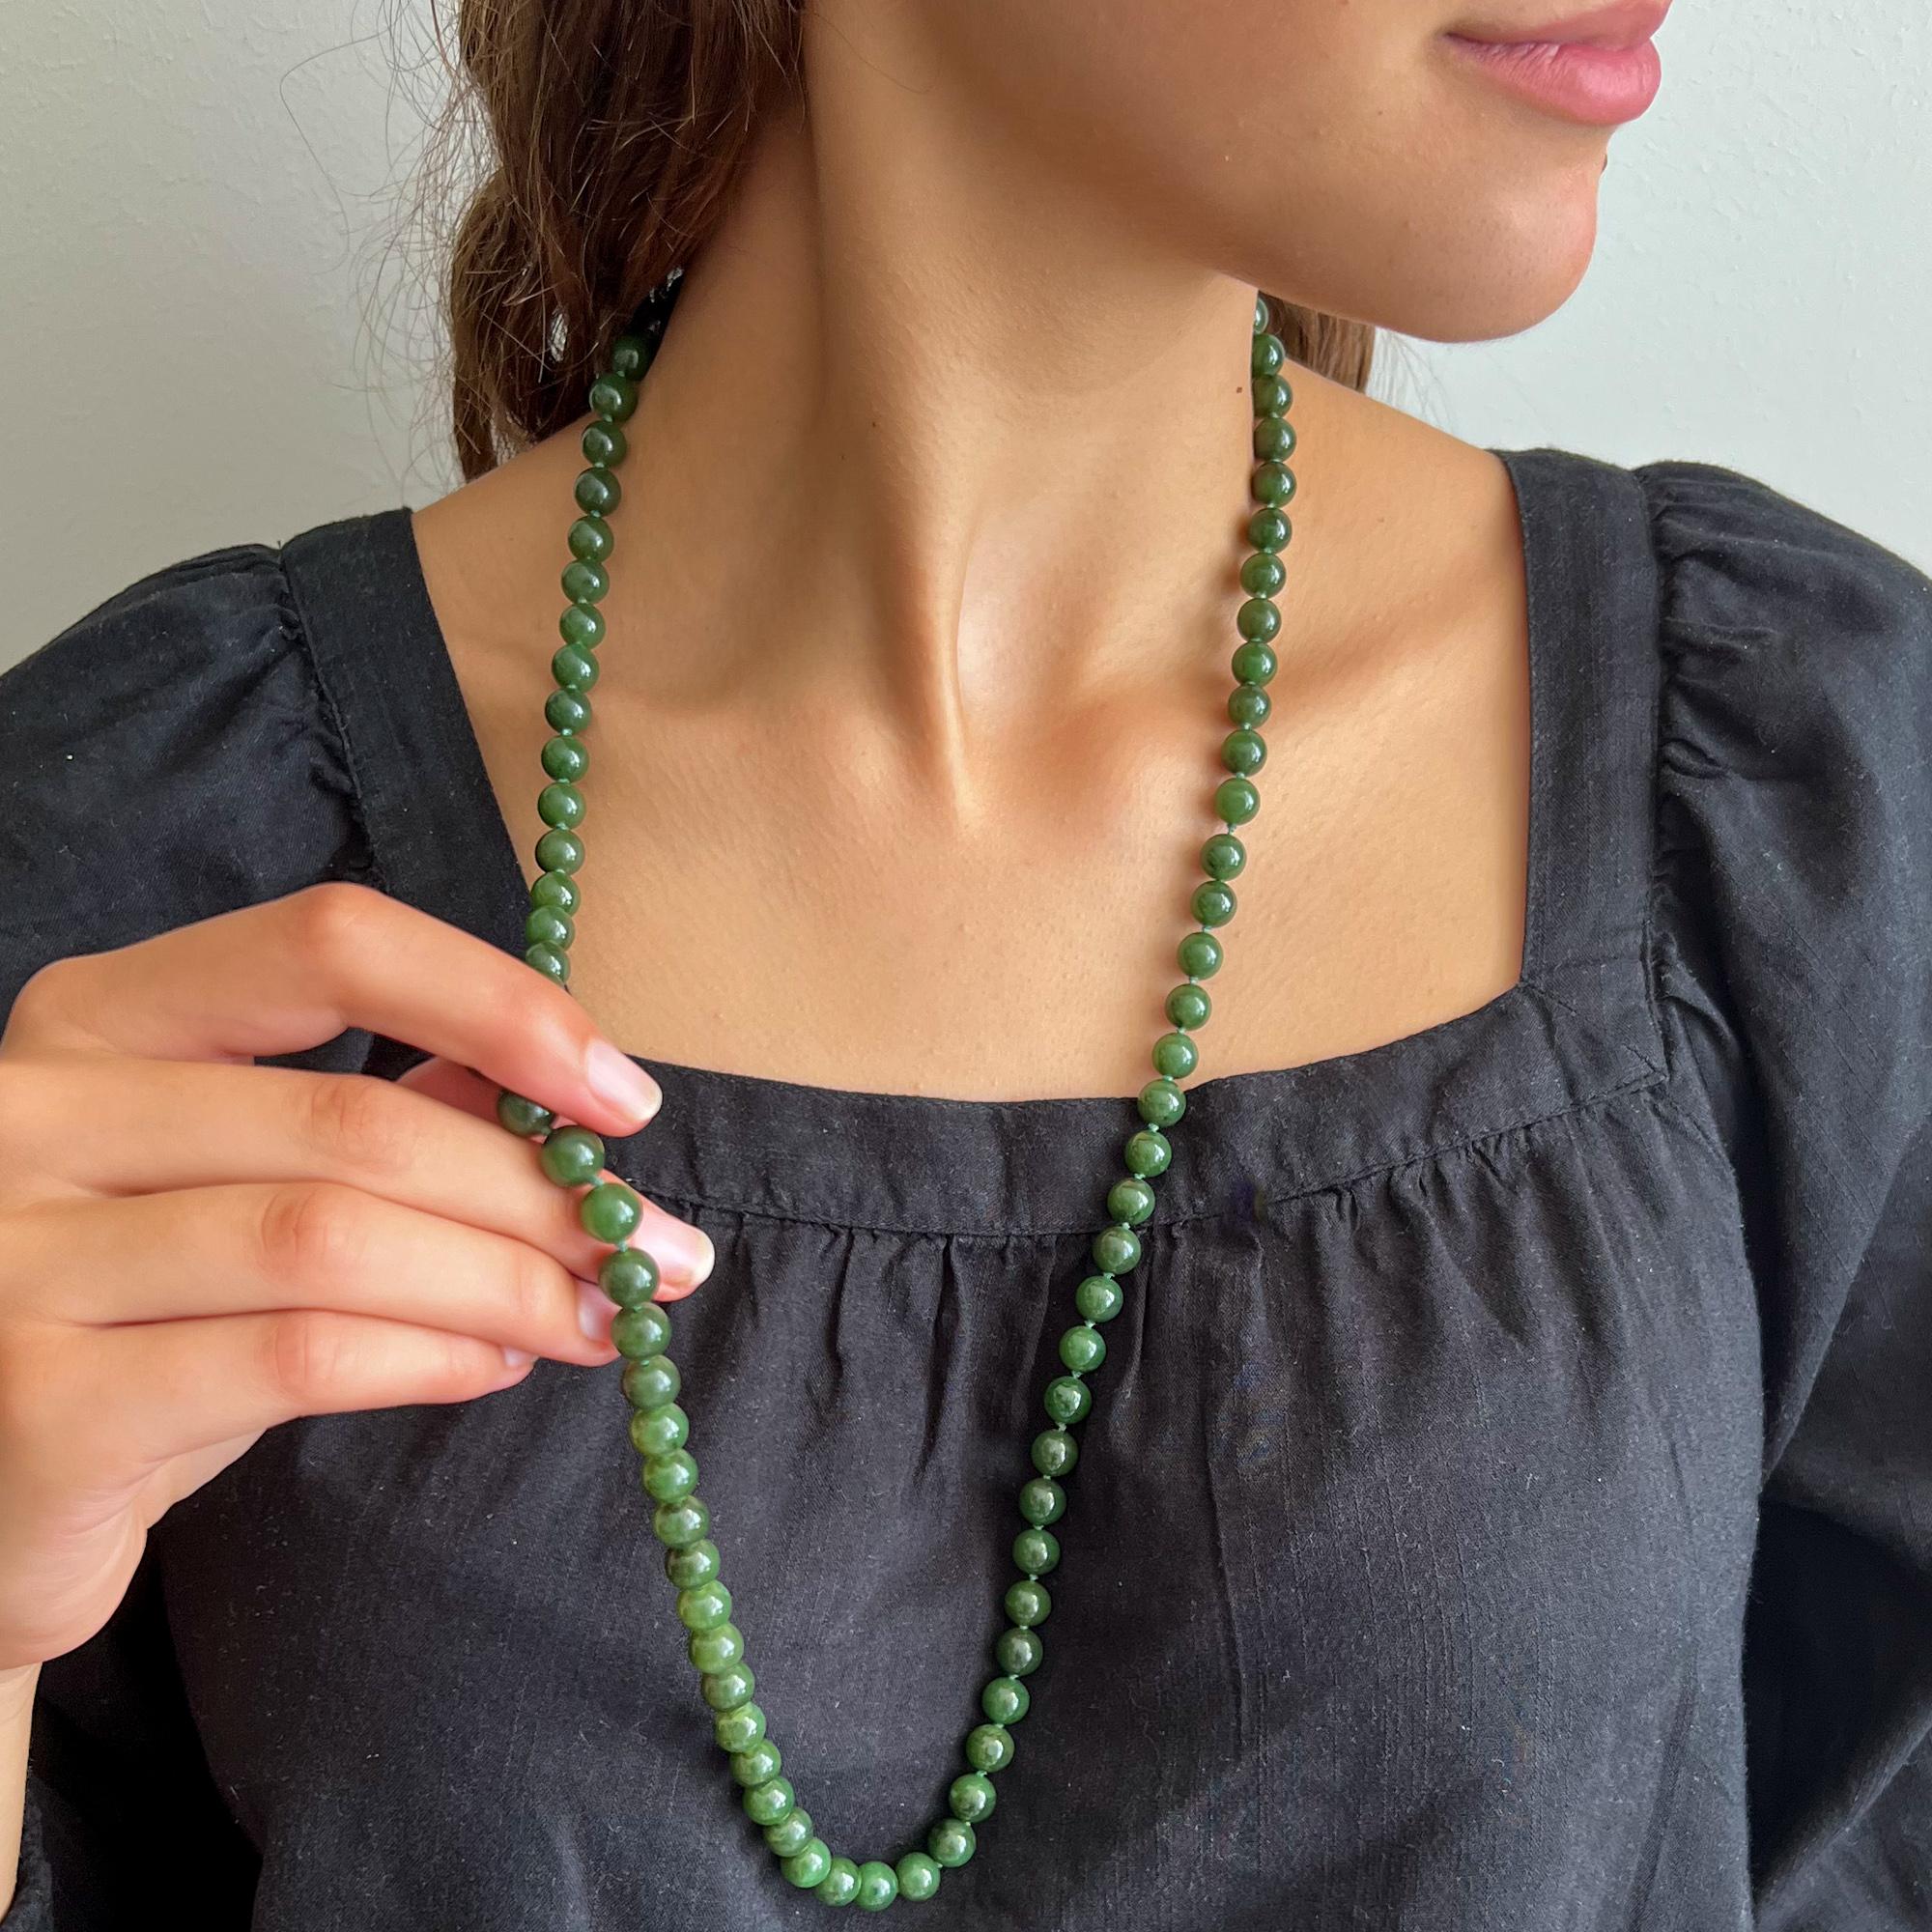 Ravissant collier de perles en jade néphrite vert à un seul brin. Le collier est long et se compose de pierres de jade néphrite de forme ronde. Les perles de jade ont une belle couleur verte et sont de taille égale. Pour garder un peu d'espace entre